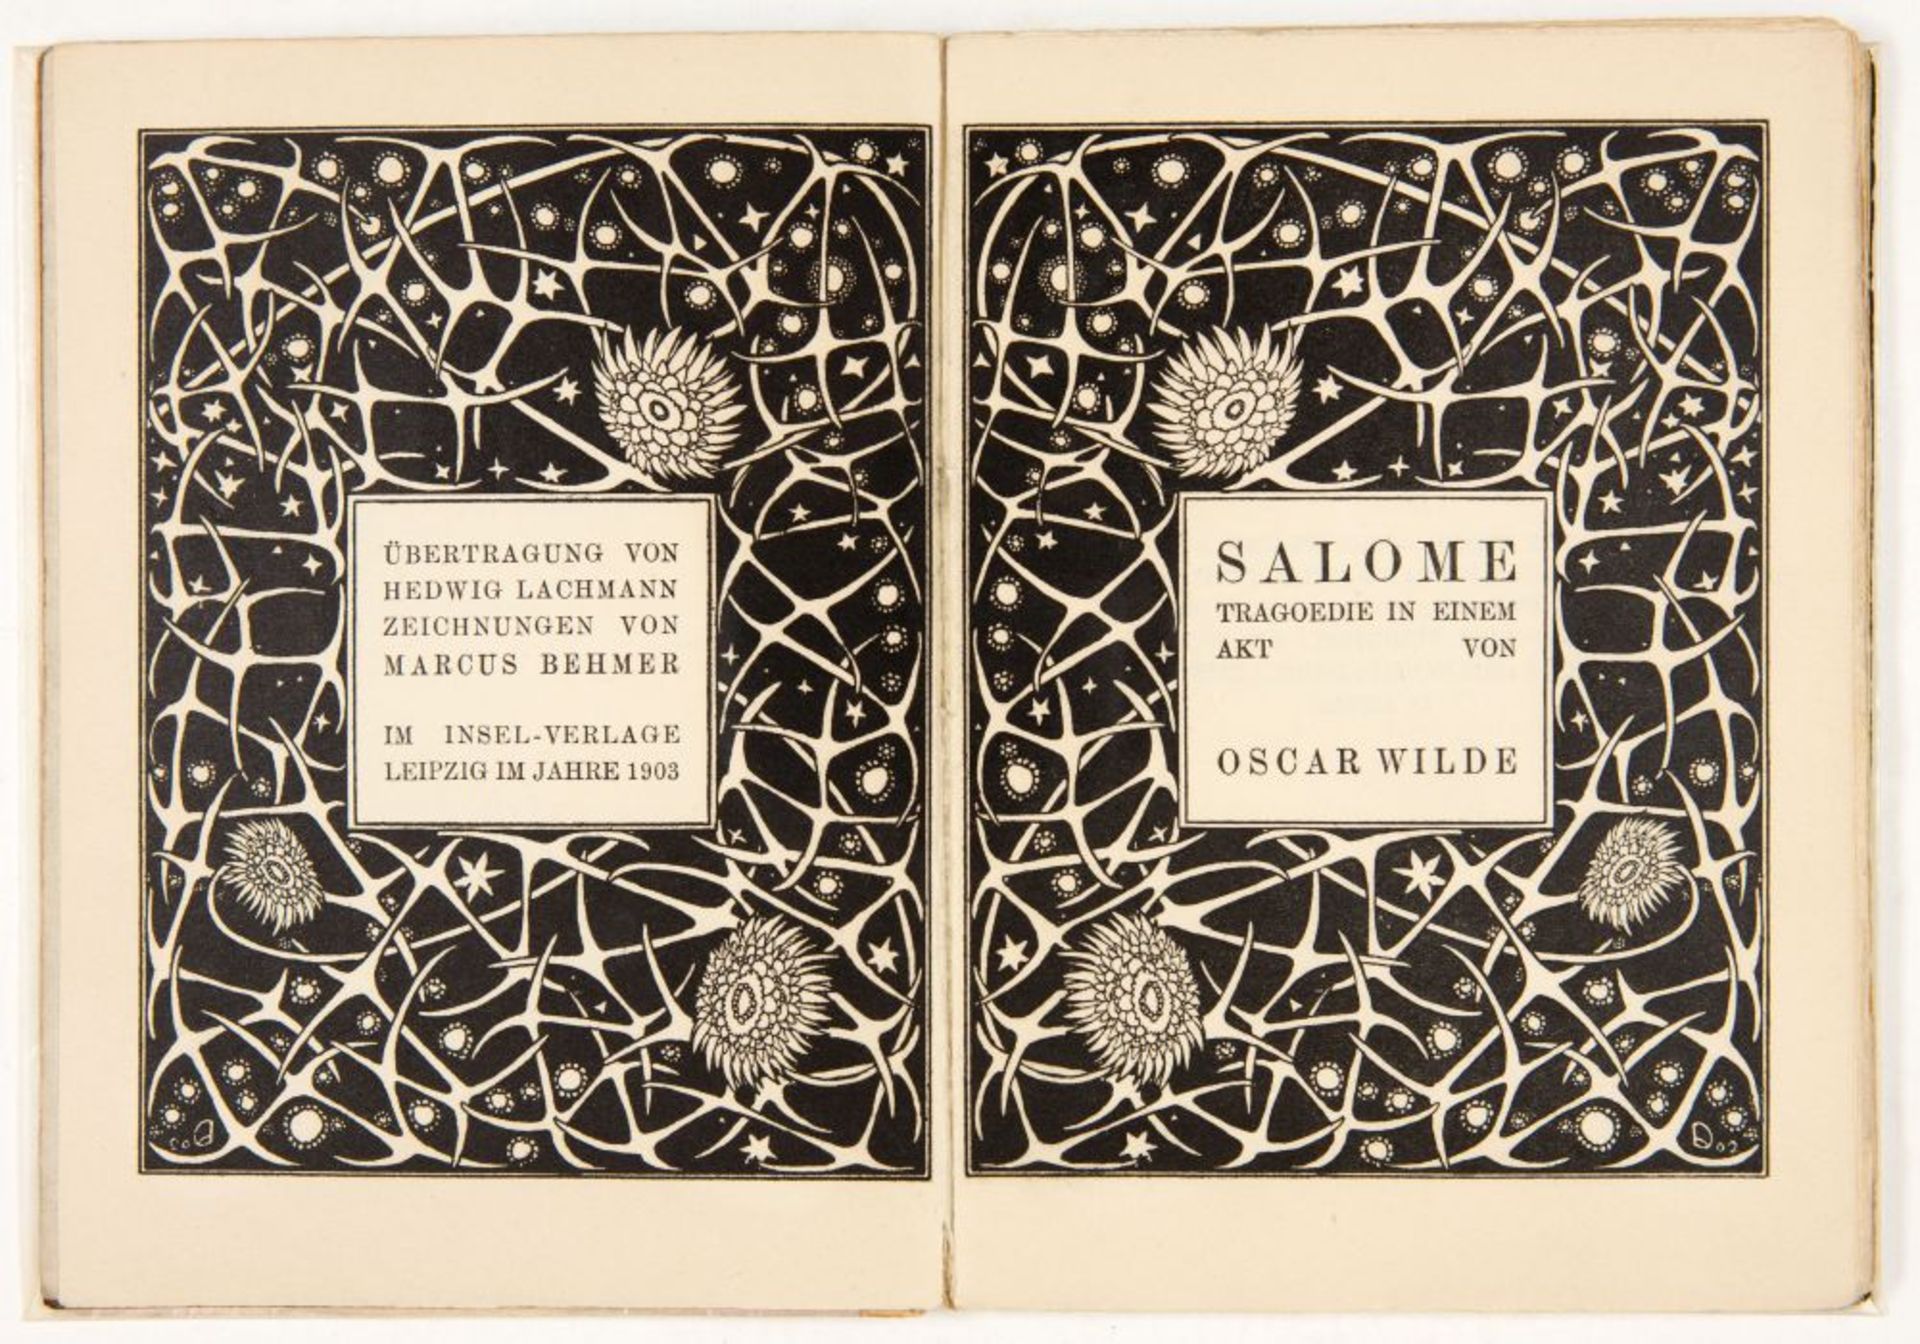 O. Wilde / M. Behmer, Salome. Tragoedie in einem Akt. Lpz 1903. - Ex. 272/500.